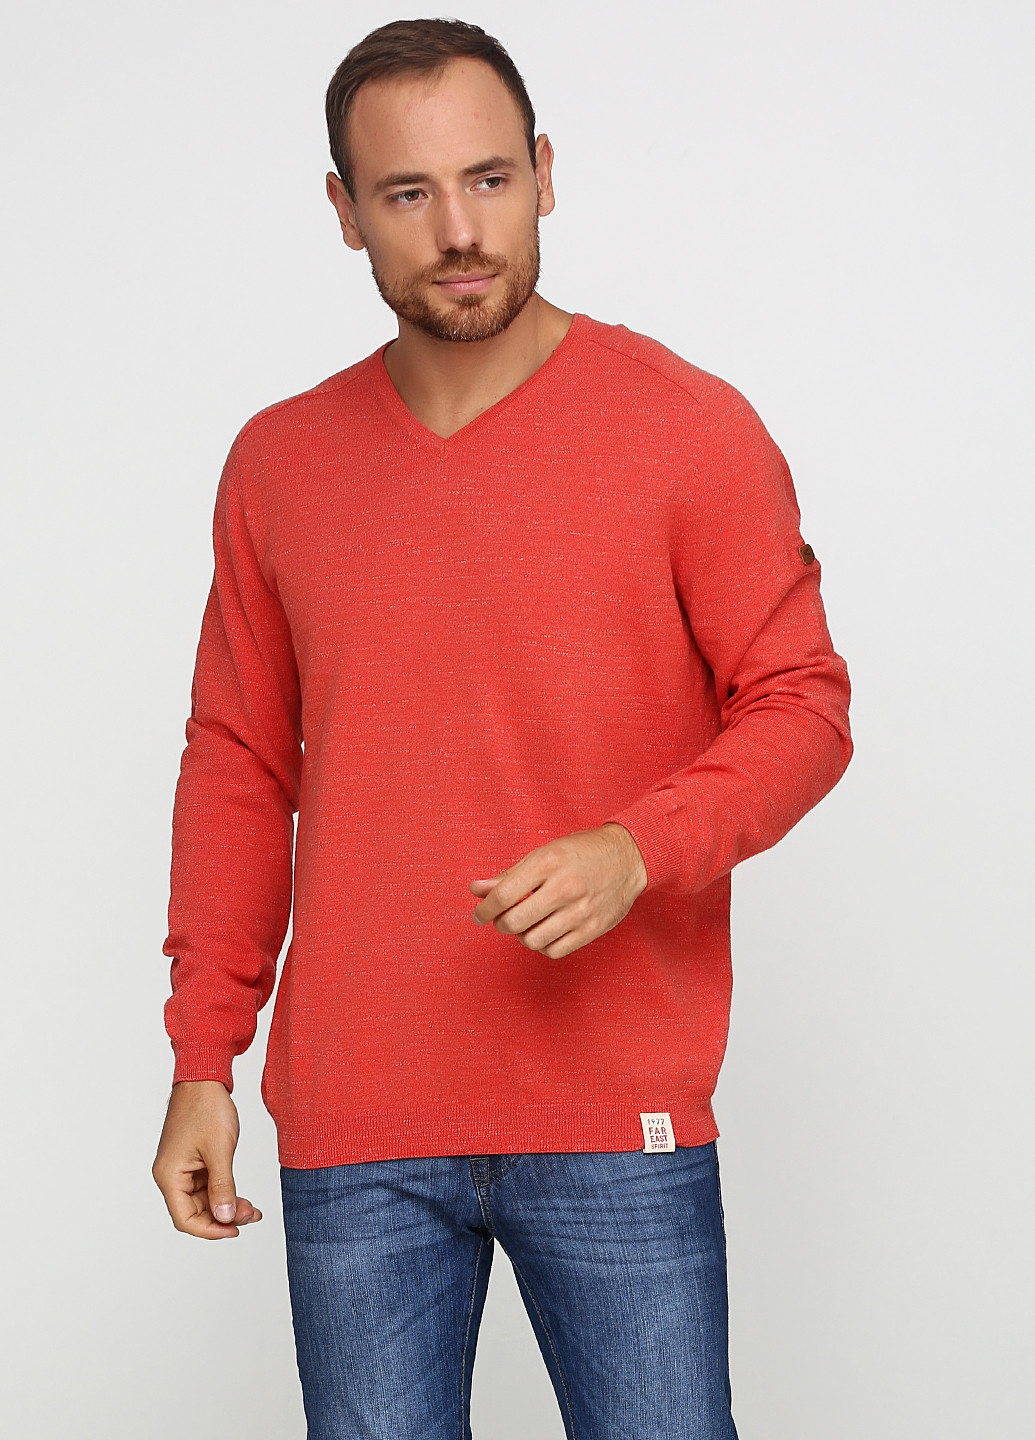 Светло-красный демисезонный пуловер пуловер Camel Active